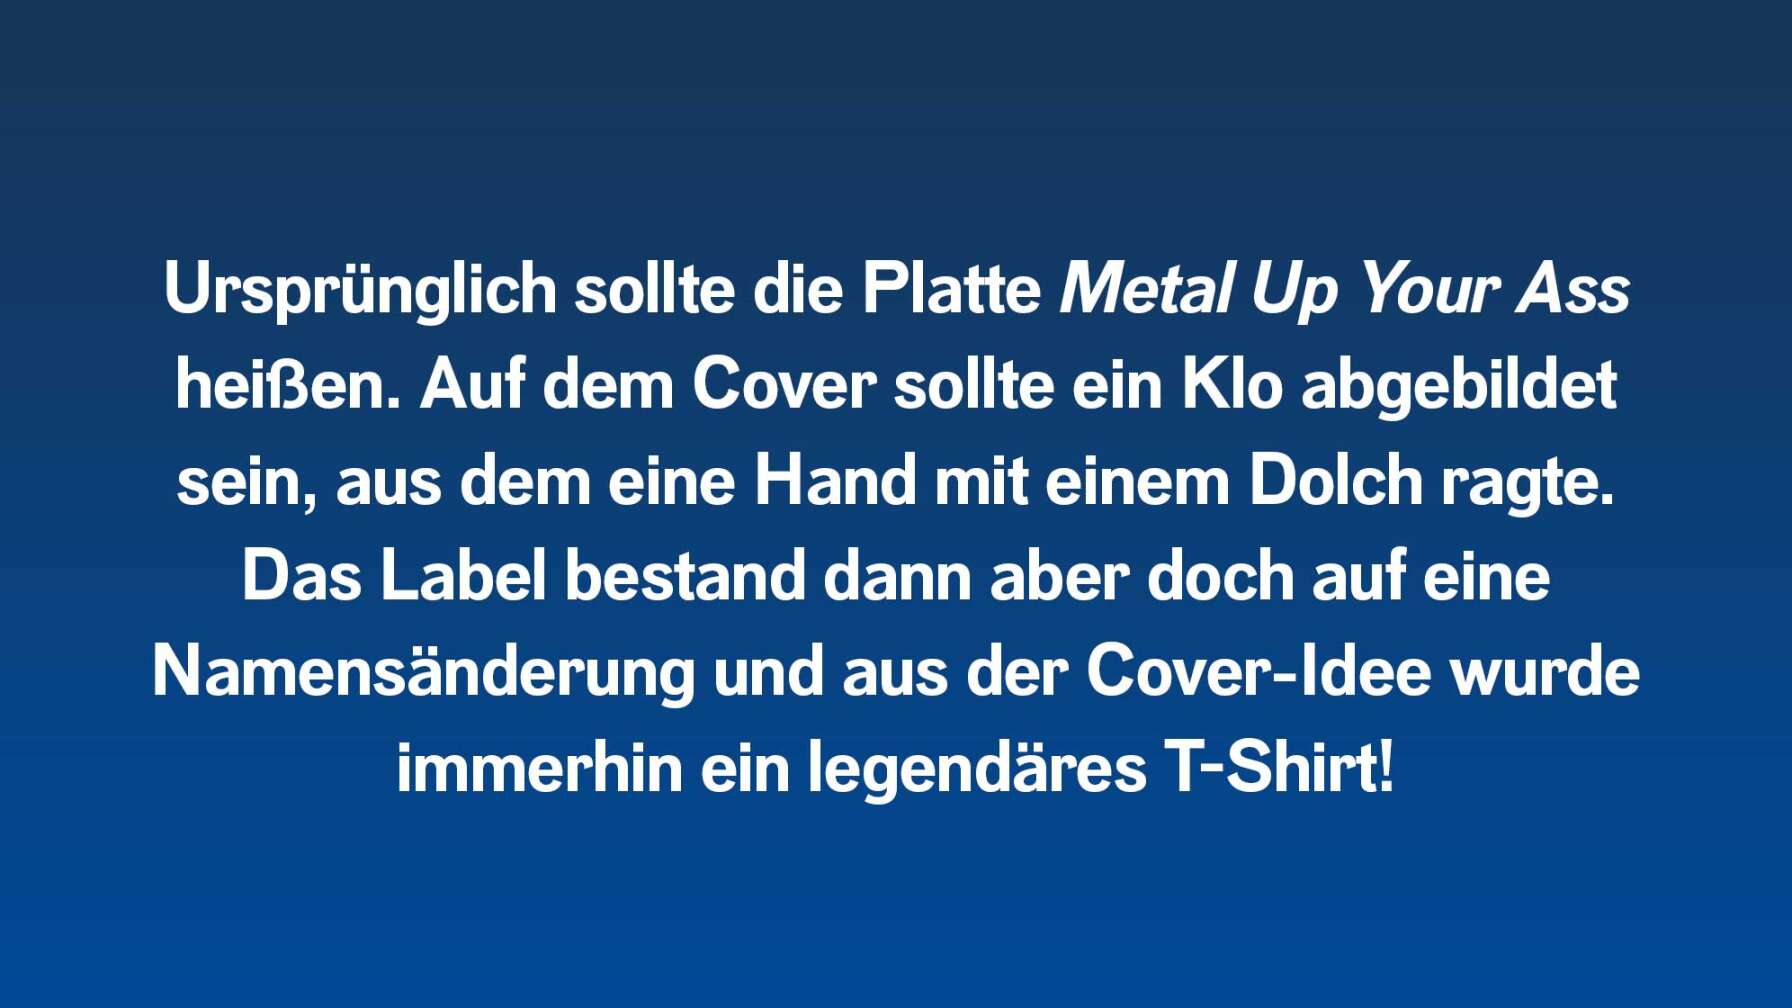 Ursprünglich sollte die Platte Metal Up Your Ass heißen. Auf dem Cover sollte ein Klo abgebildet sein, aus dem eine Hand mit einem Dolch ragte. Das Label bestand dann aber doch auf eine Namensänderung und aus der Cover-Idee wurde immerhin ein legendäres T-Shirt!